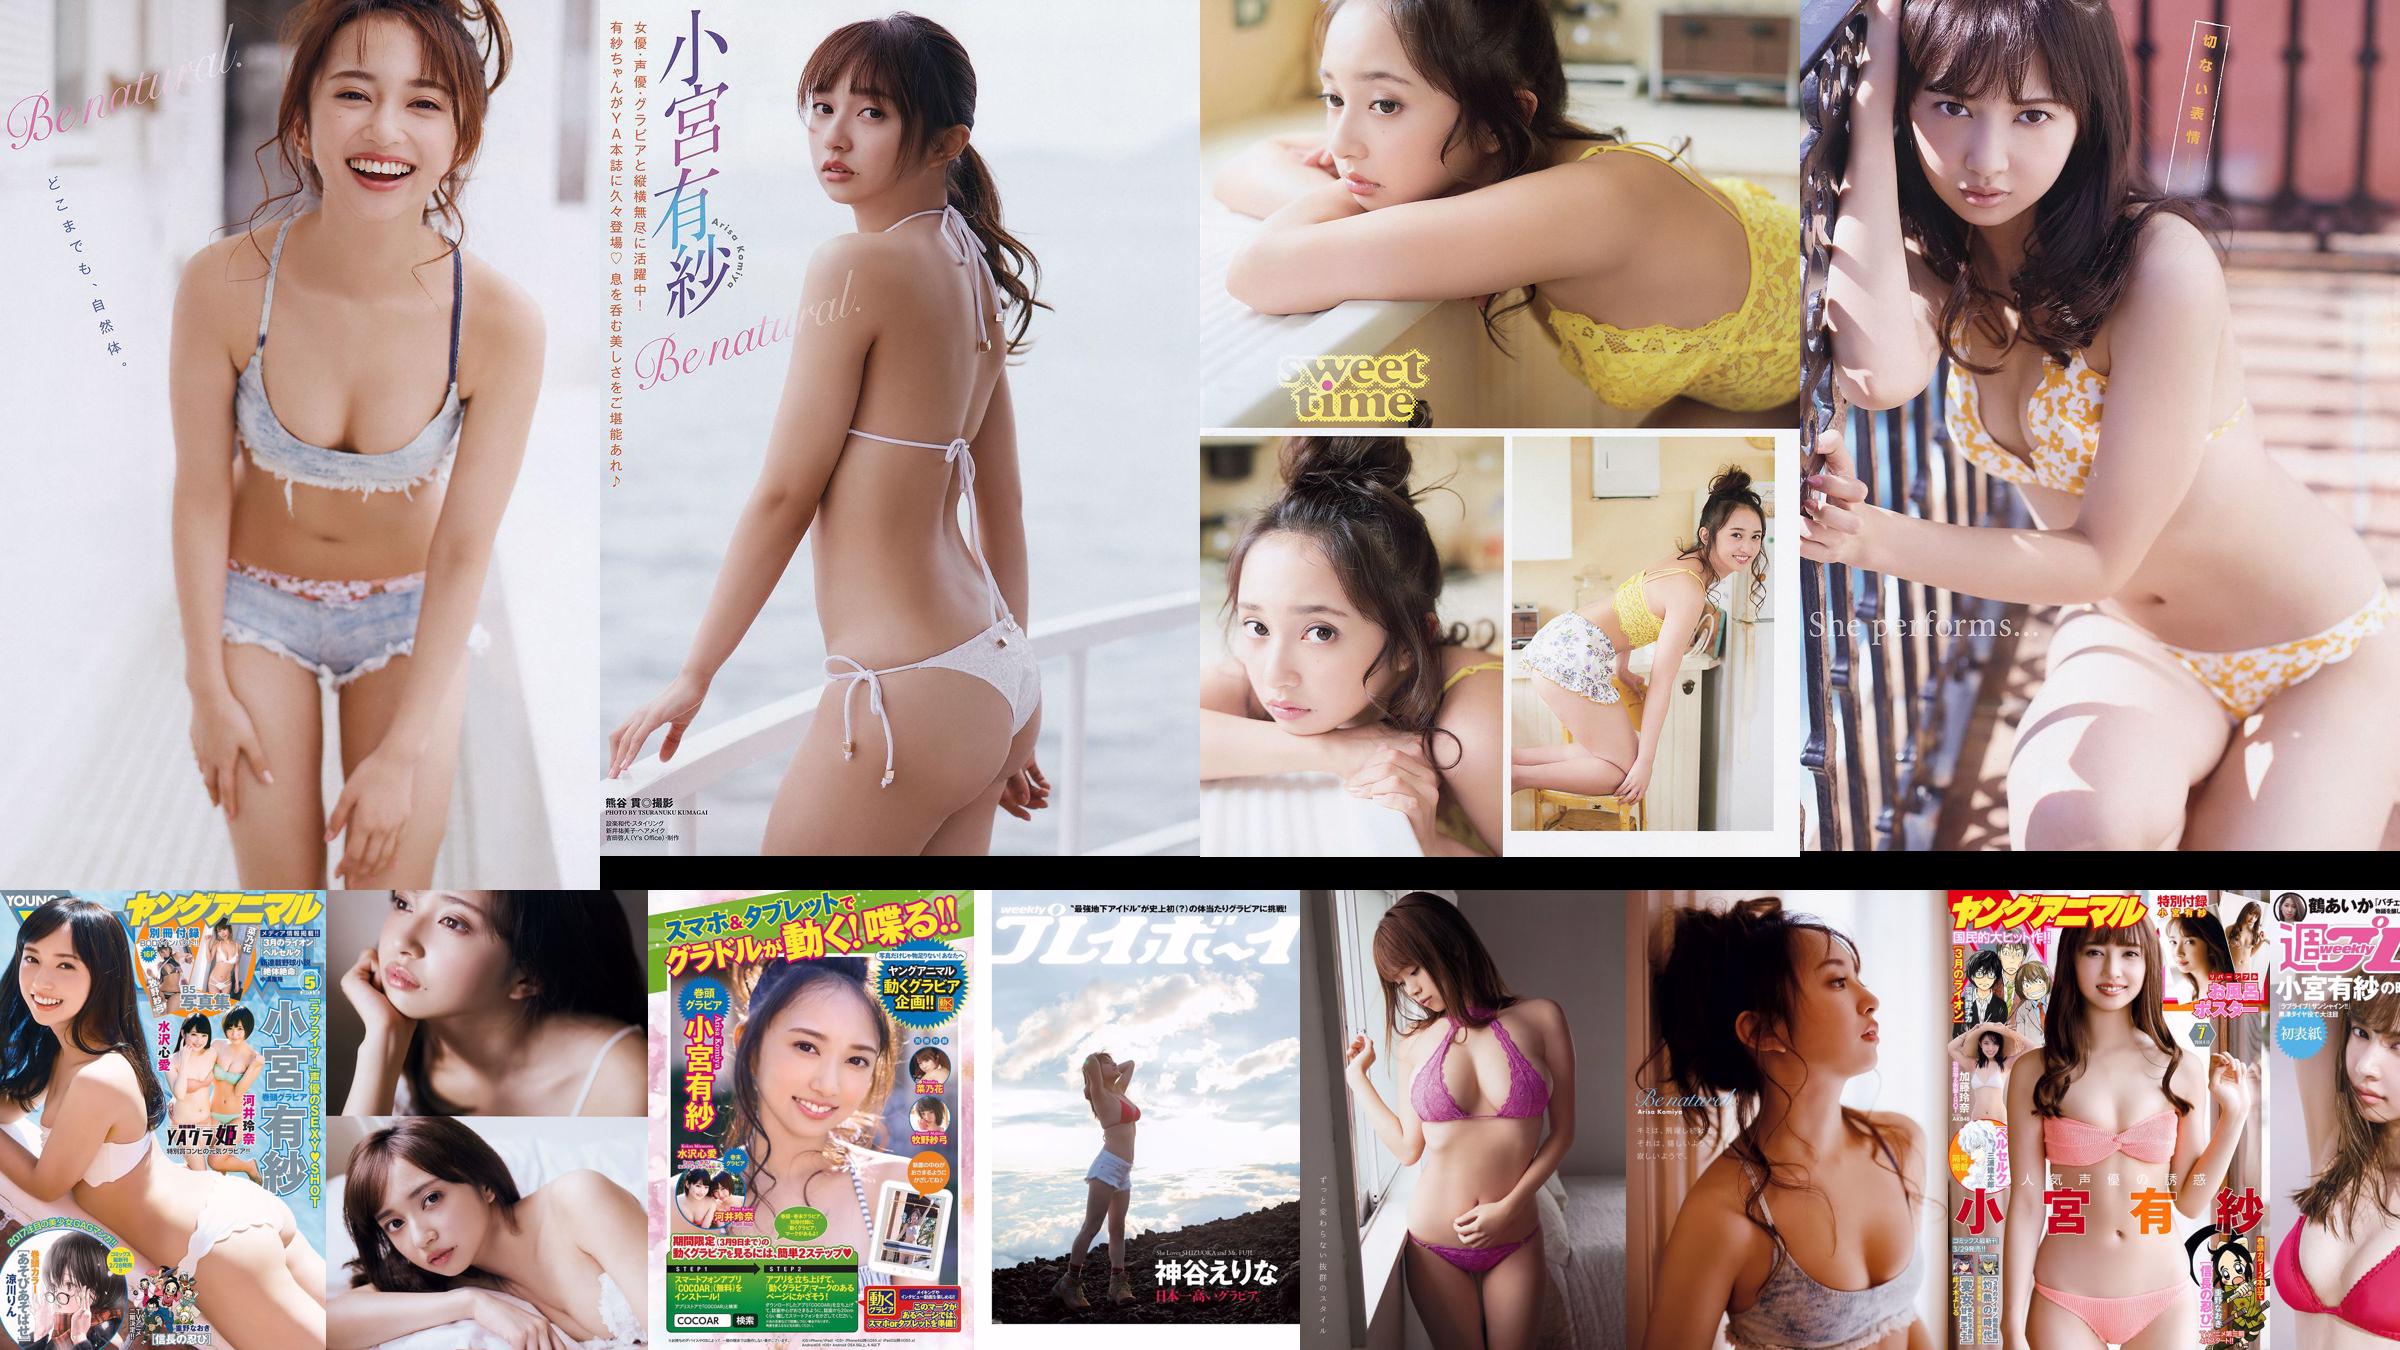 Arisa Komiya Aika Tsuru Sayaka Isoyama Kasumi Arimura Rina Otomo Sei Shiraishi Erina Kamiya [Weekly Playboy] 2017 No.41 照片 No.ad031e 第14頁